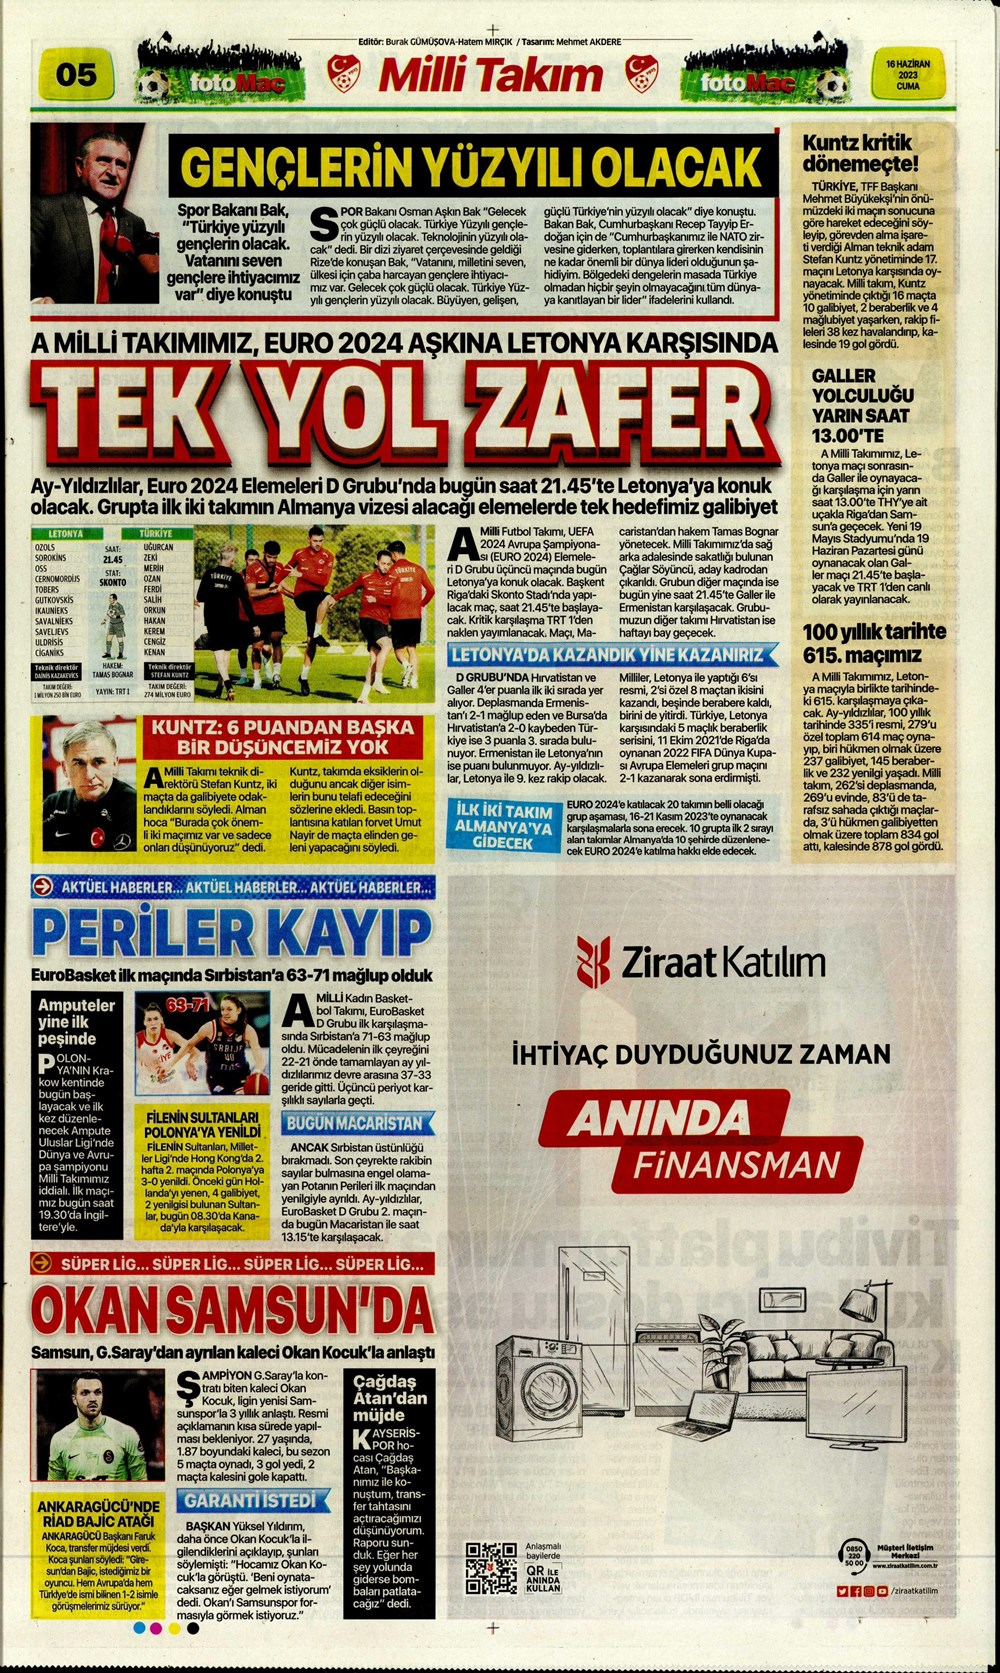 "Dzeko çok yakın" Sporun manşetleri (16 Haziran 2023)  - 13. Foto